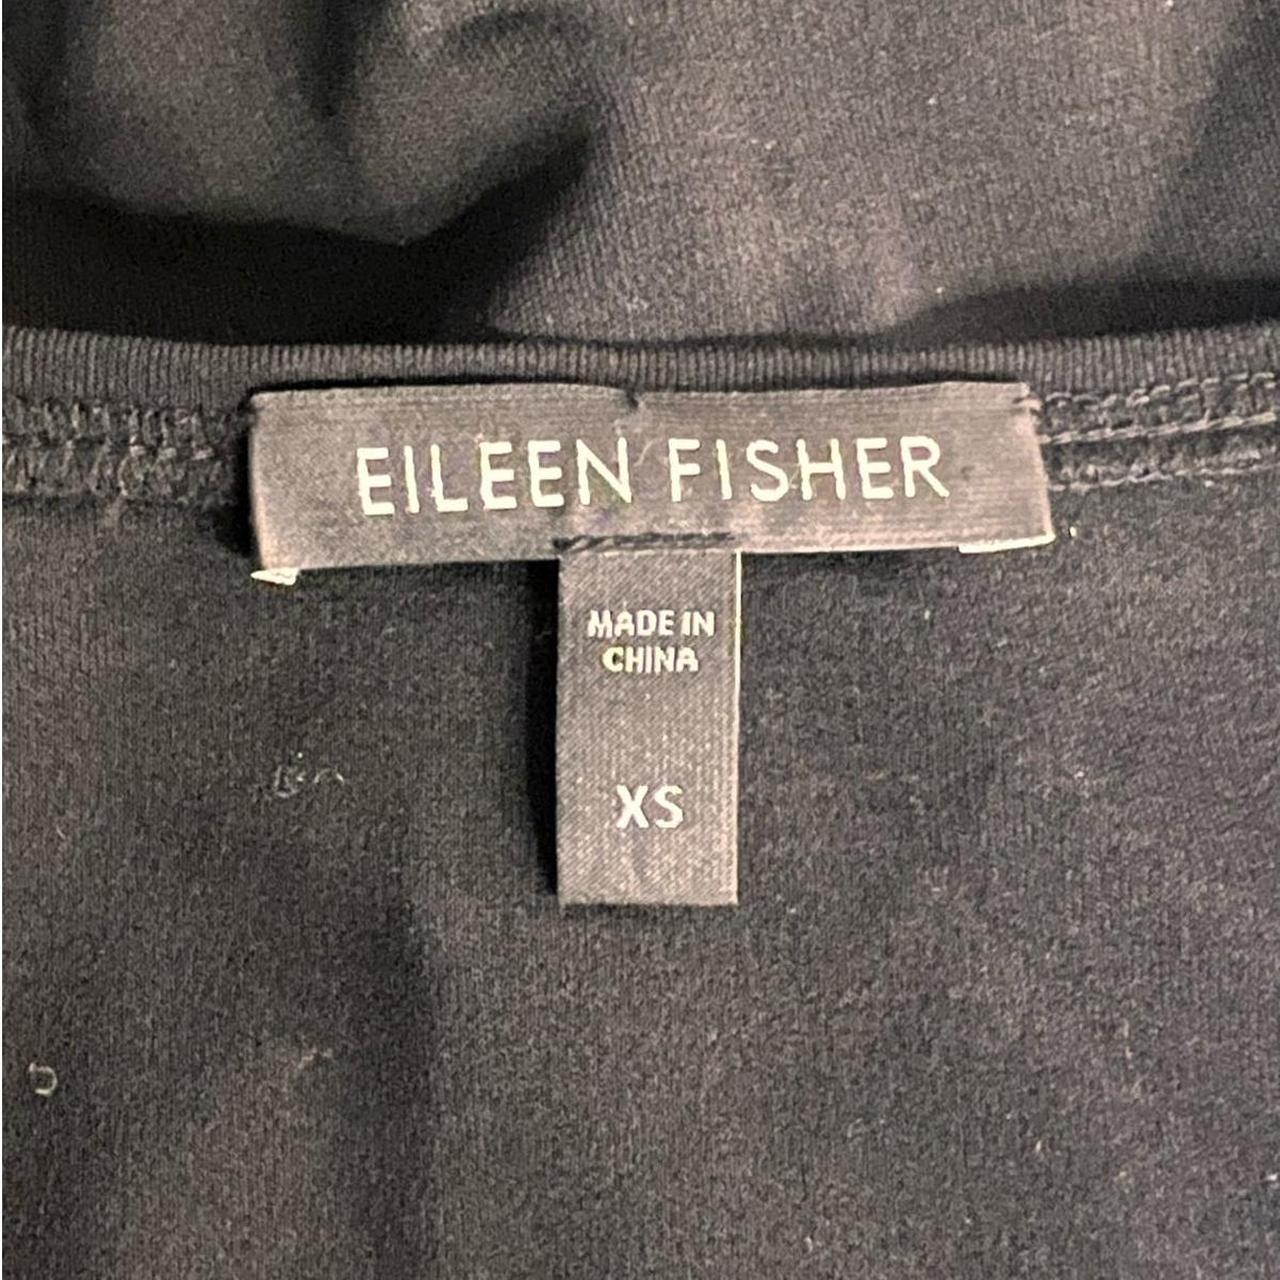 Eileen Fisher S black silk tank dress Drape-y, - Depop